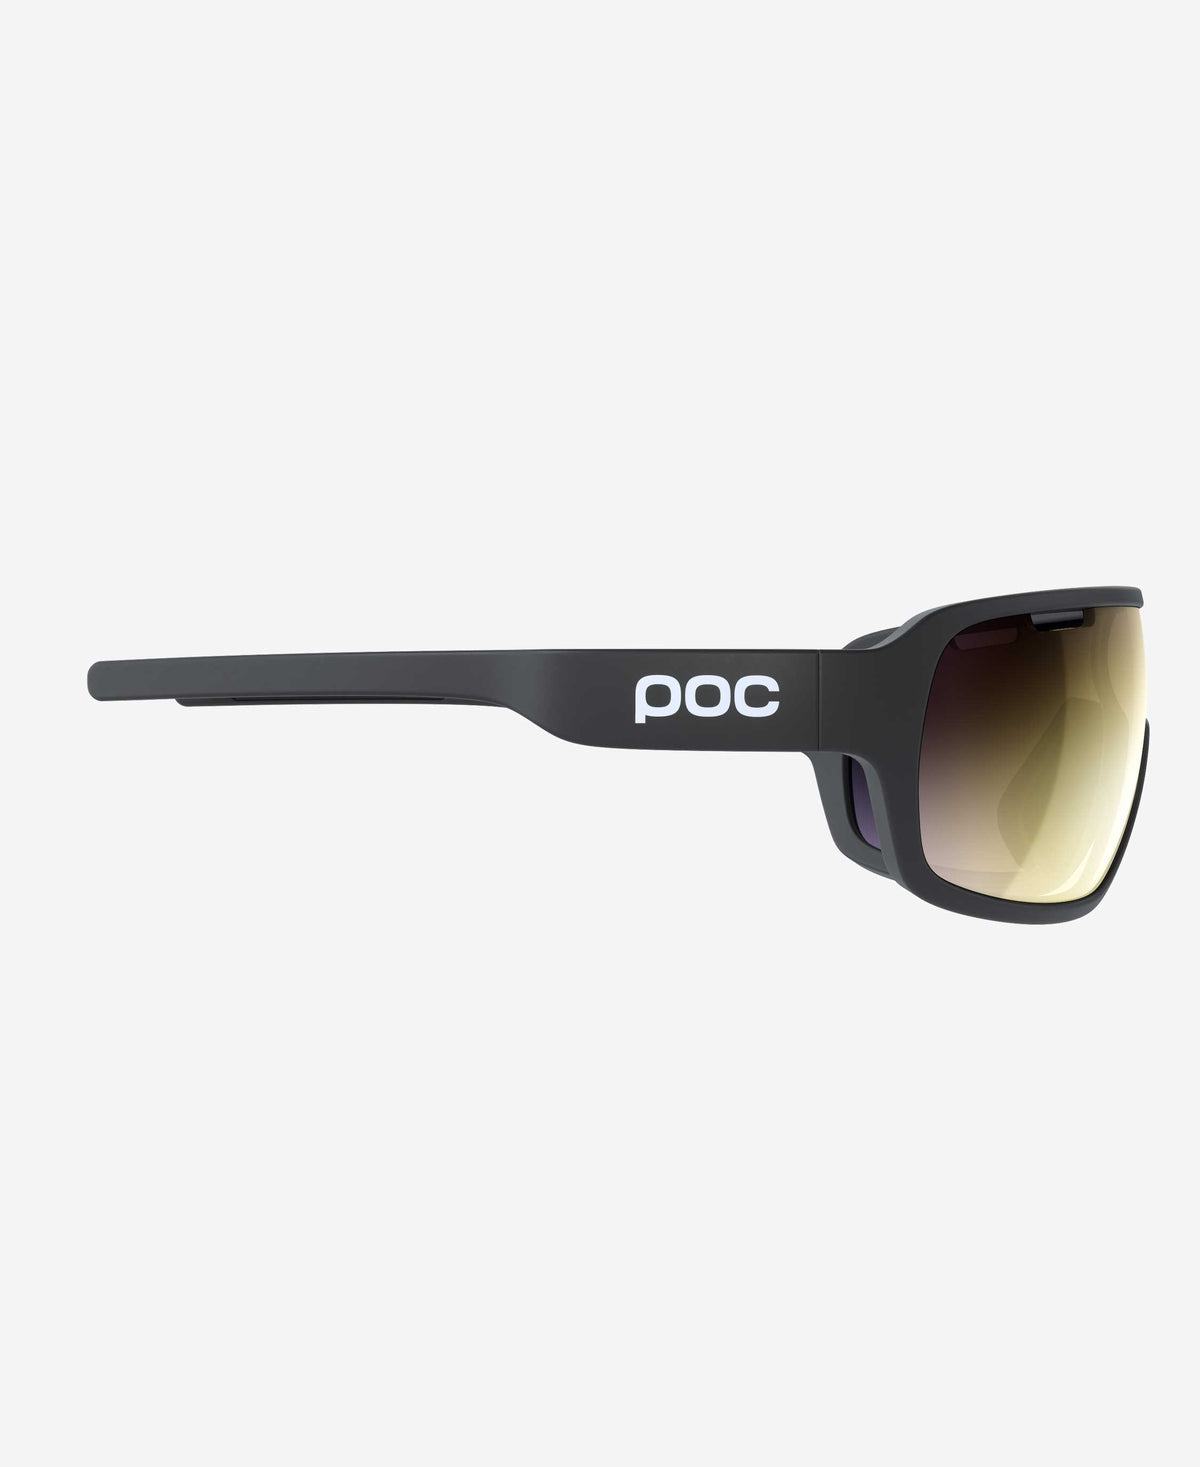 POC Do Blade Sport Sunglasses (Uranium Black)